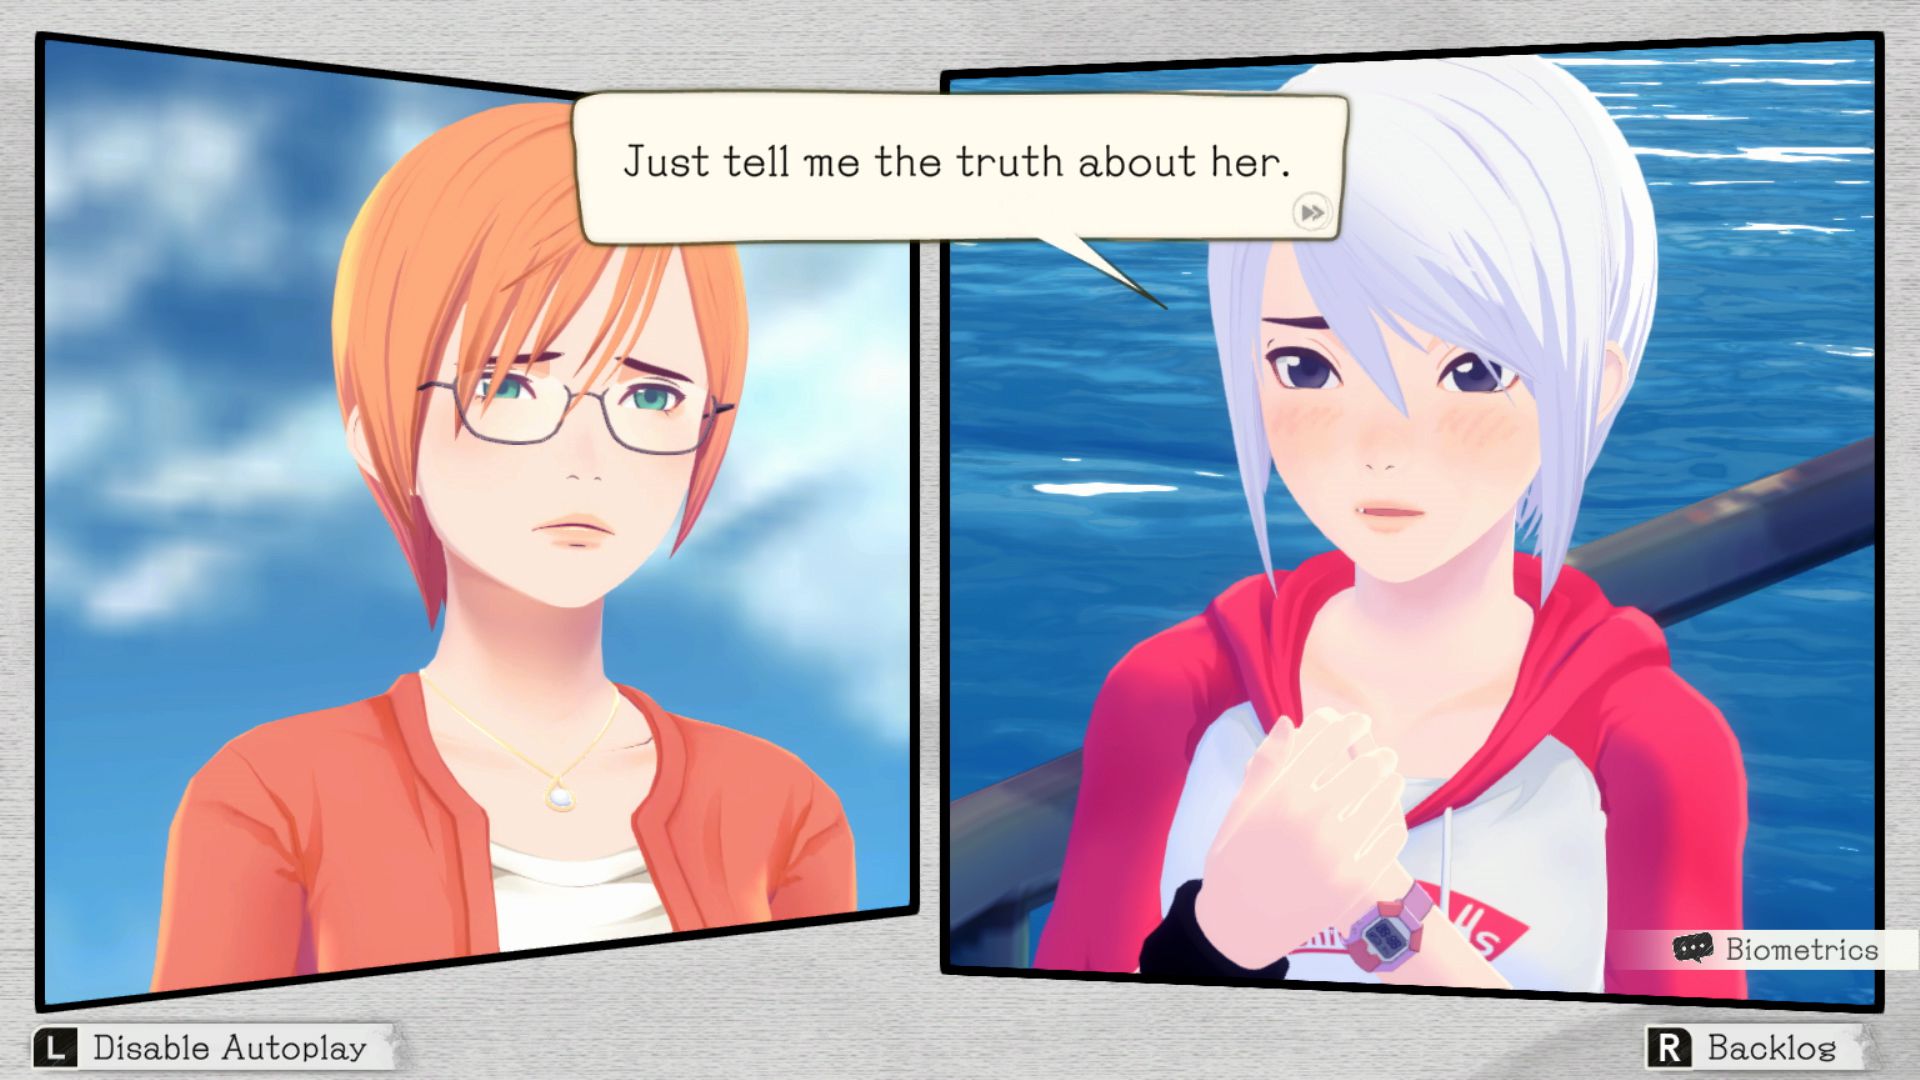 На скриншоте из игры Another Code: Recollection два человека разговаривают друг с другом из отдельных квадратов, как в комиксе. Один, с белыми волосами, говорит: «Просто скажи мне правду о ней».